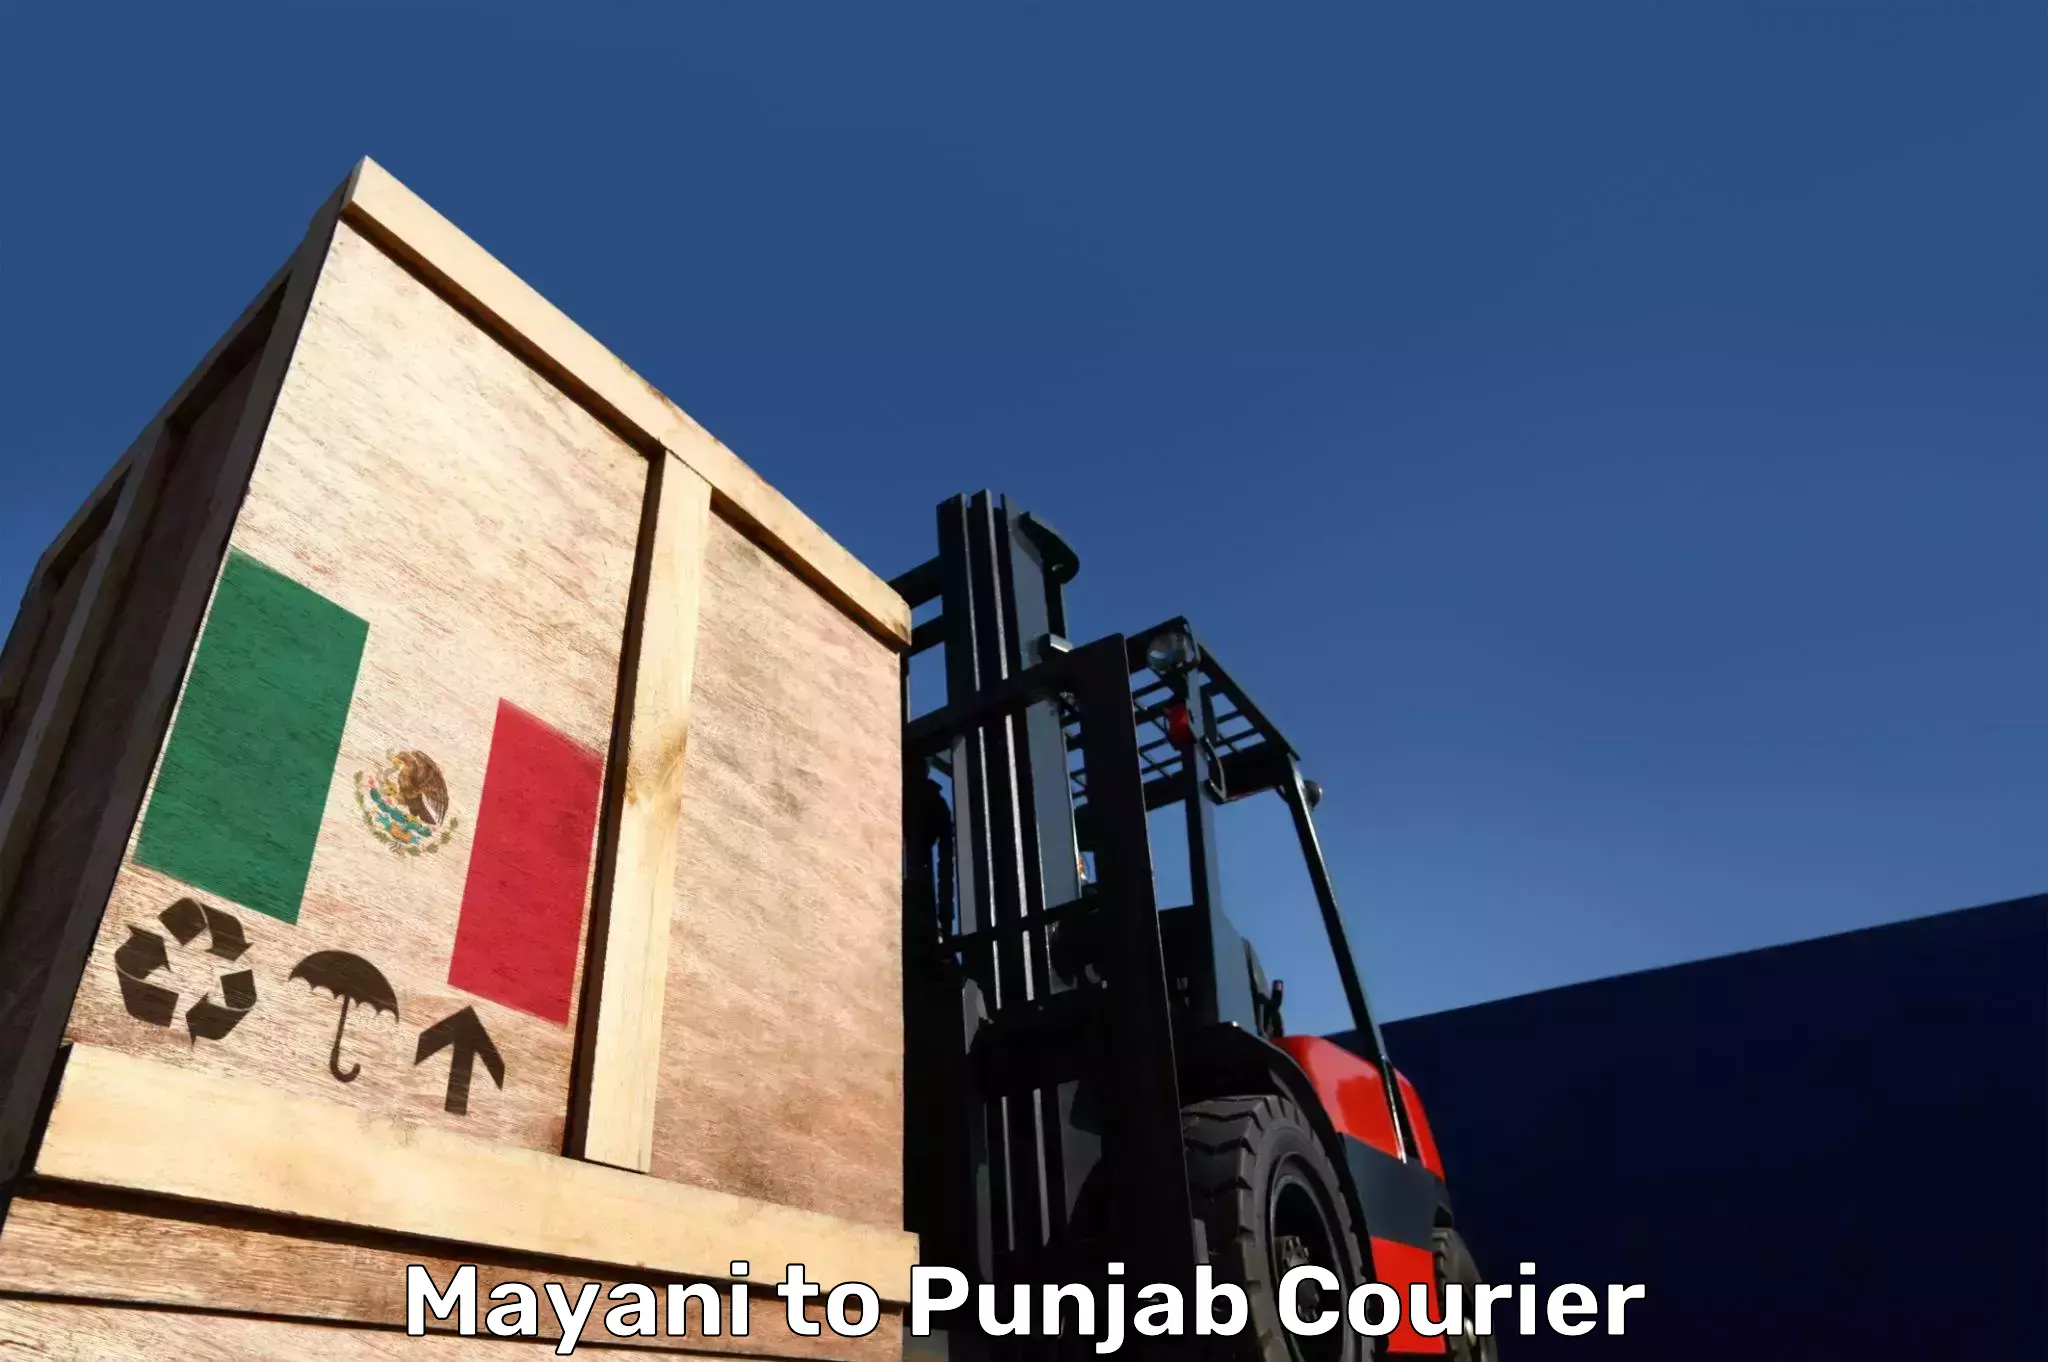 Luggage transport consulting Mayani to Punjab